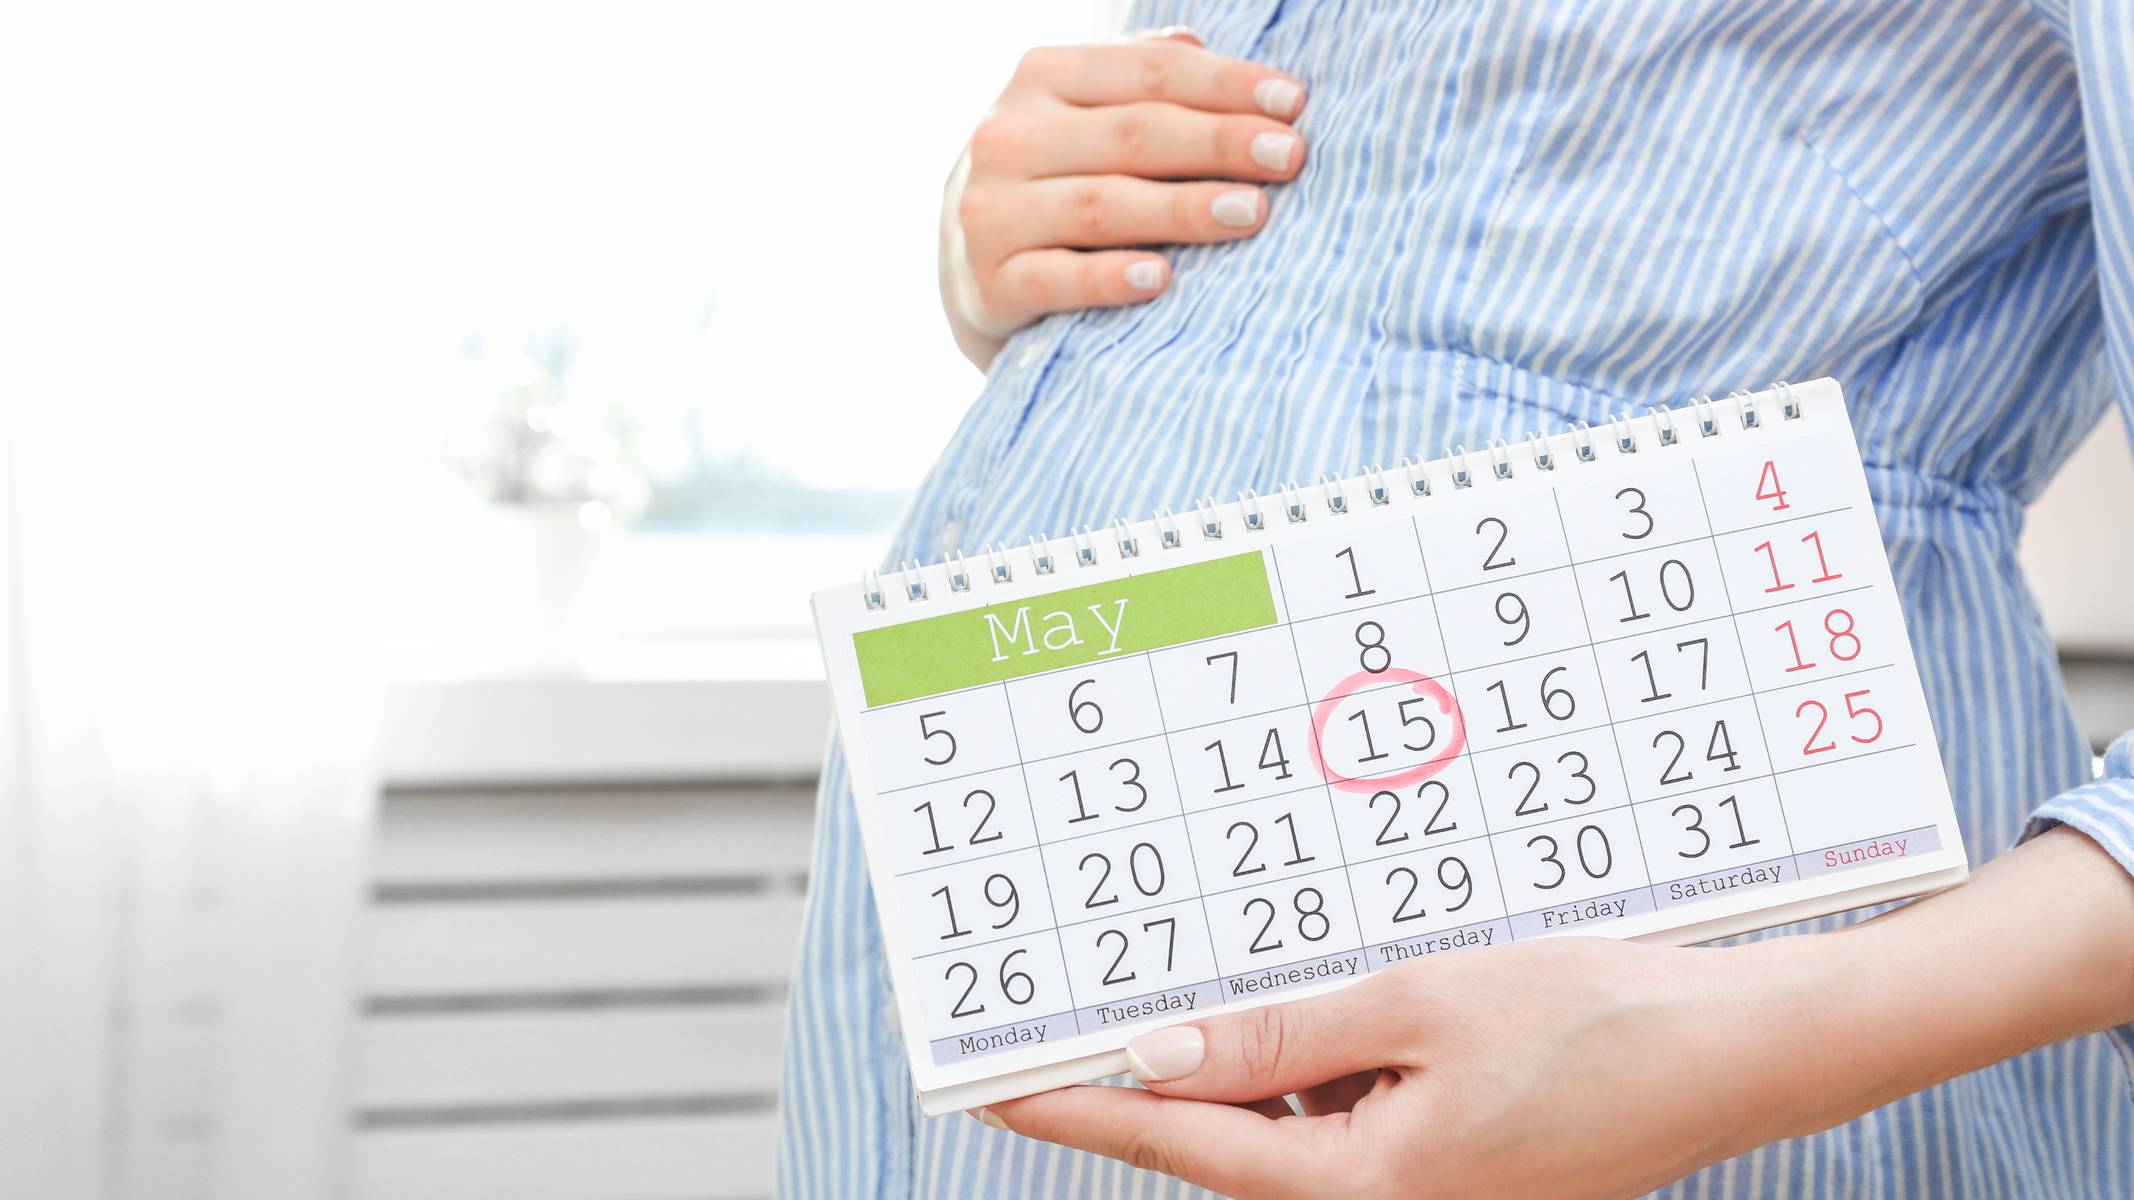 Календарь беременности на телефон